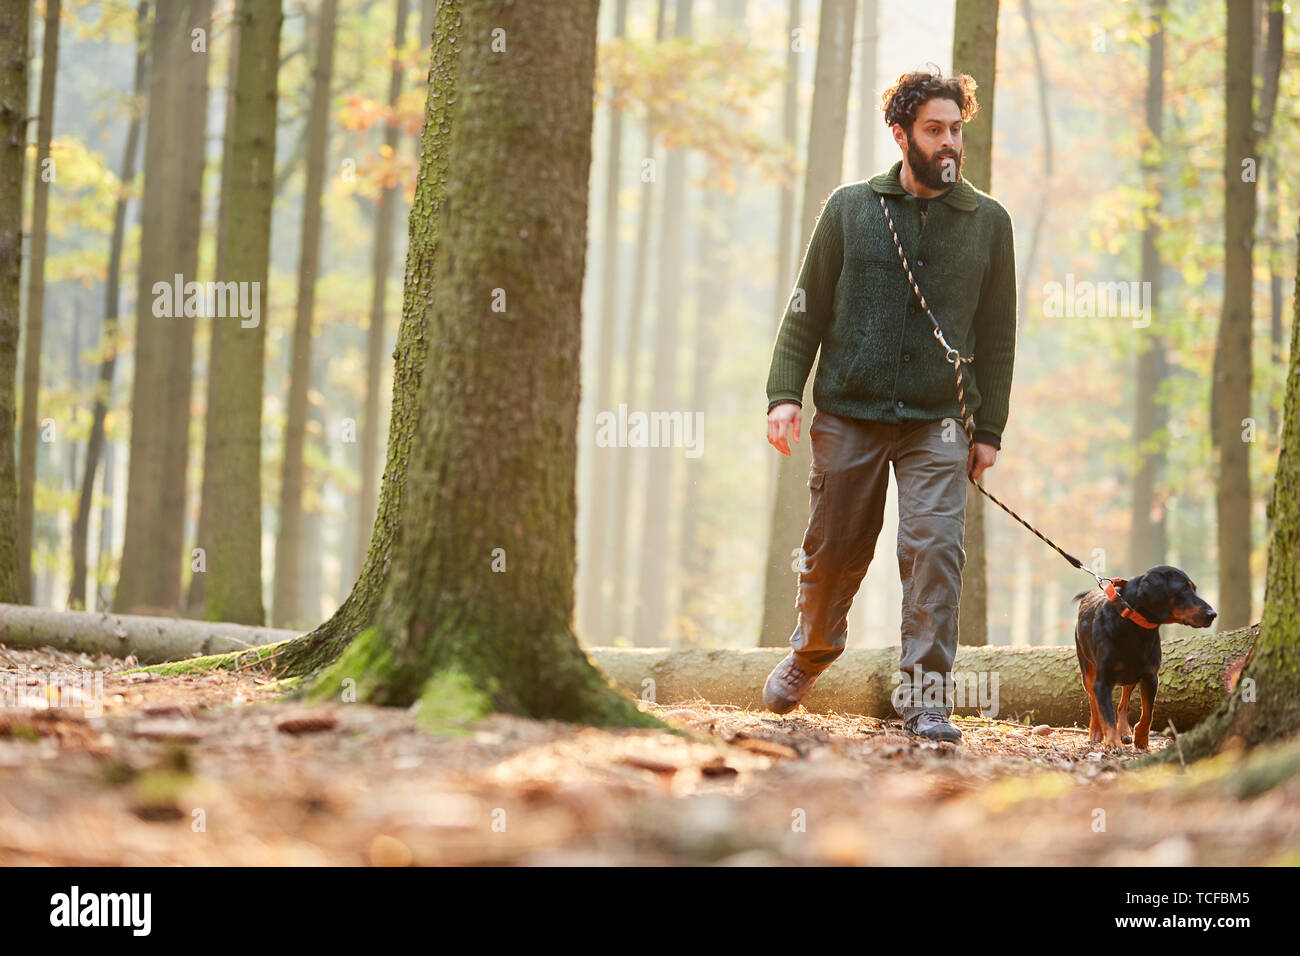 Les chasseurs ou les forestiers d'aller marcher dans les bois avec un chien comme un chien de chasse Banque D'Images